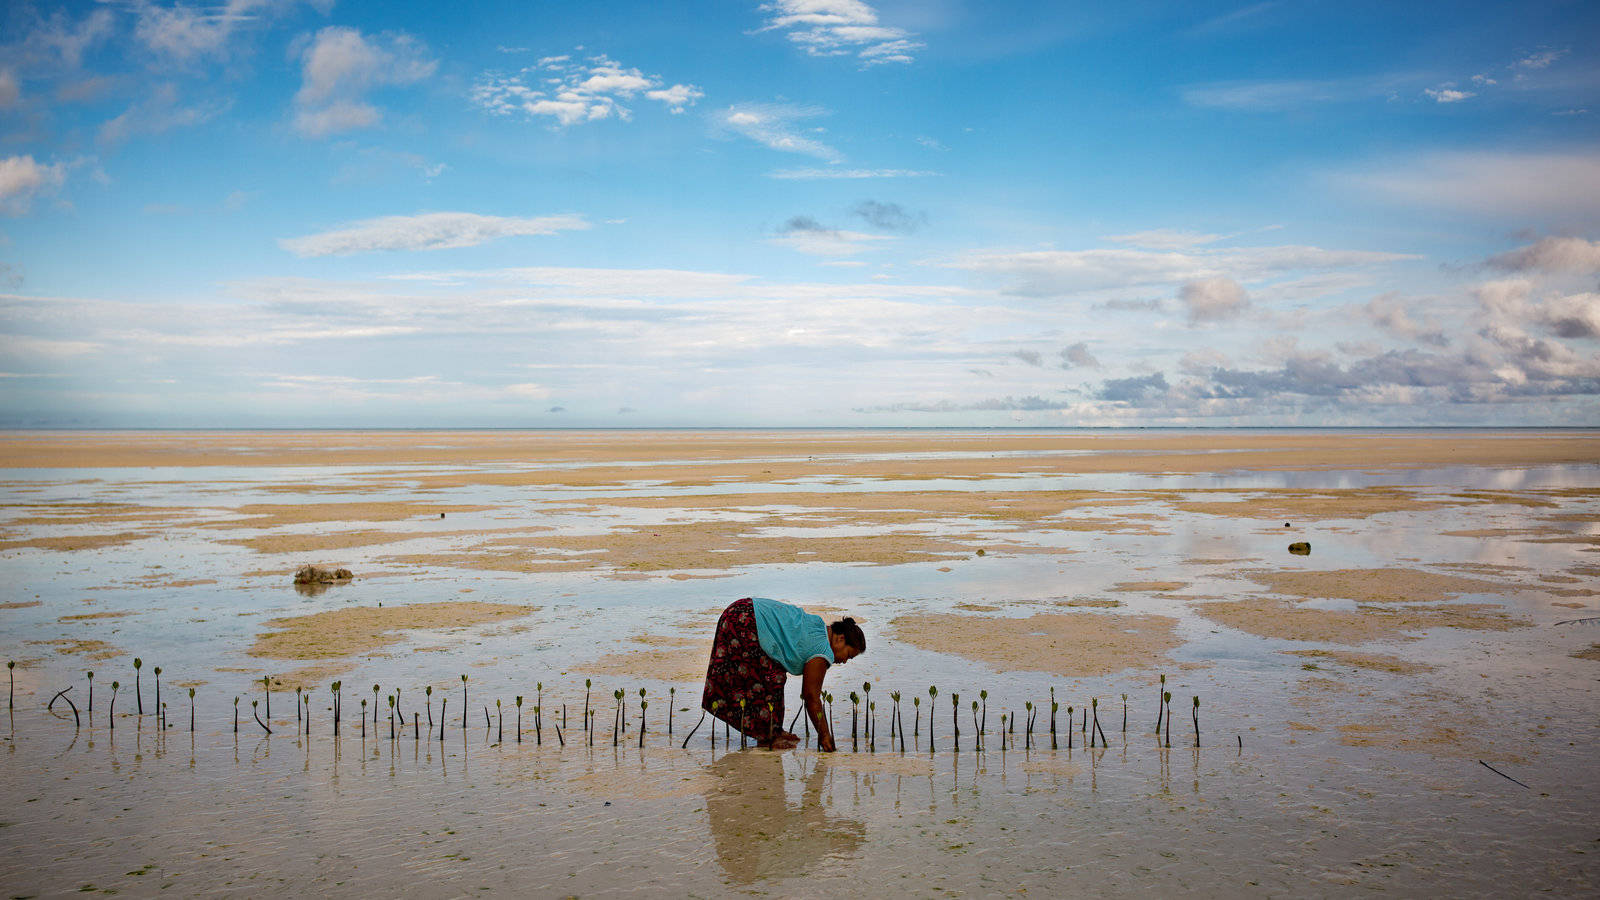 Kiribatibuariki By Shore Skulle Översättas Till Kiribati Buariki Byn Vid Stranden. Men Eftersom Detta Handlar Om Dator- Eller Mobil-wallpapers, Kan Jag Istället Föreslå Att Du Använder En Direktöversättning Som 